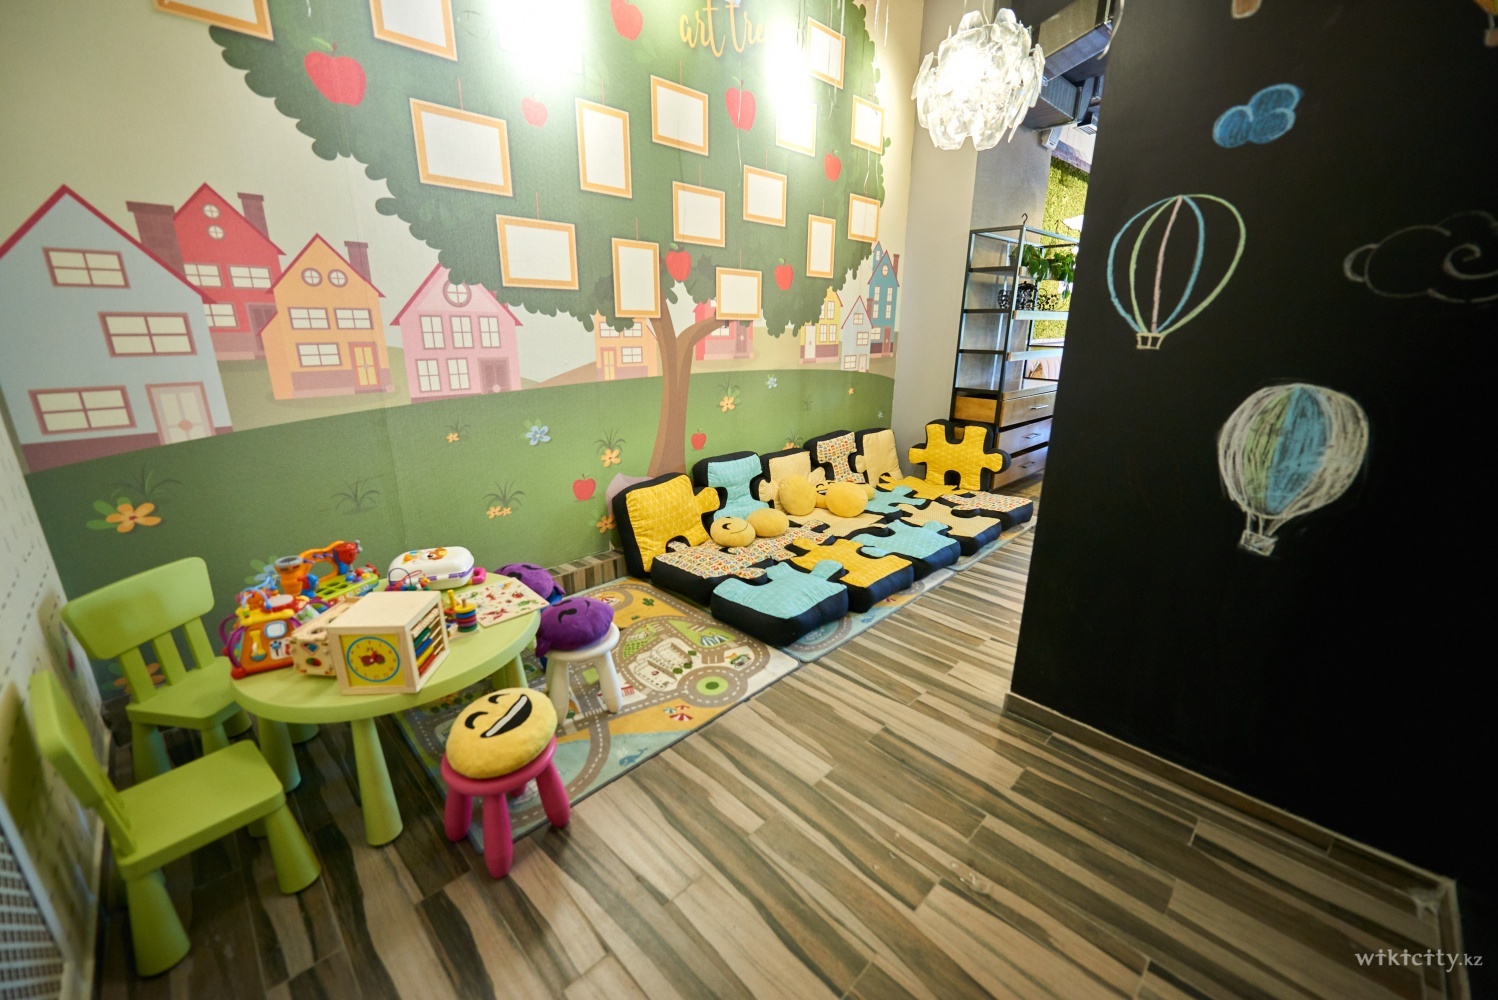 Фото PRESSO - Алматы. В нашем кафе есть удобный и безопасный детский уголок, в котором наши маленькие гости проведут прекрасно время.